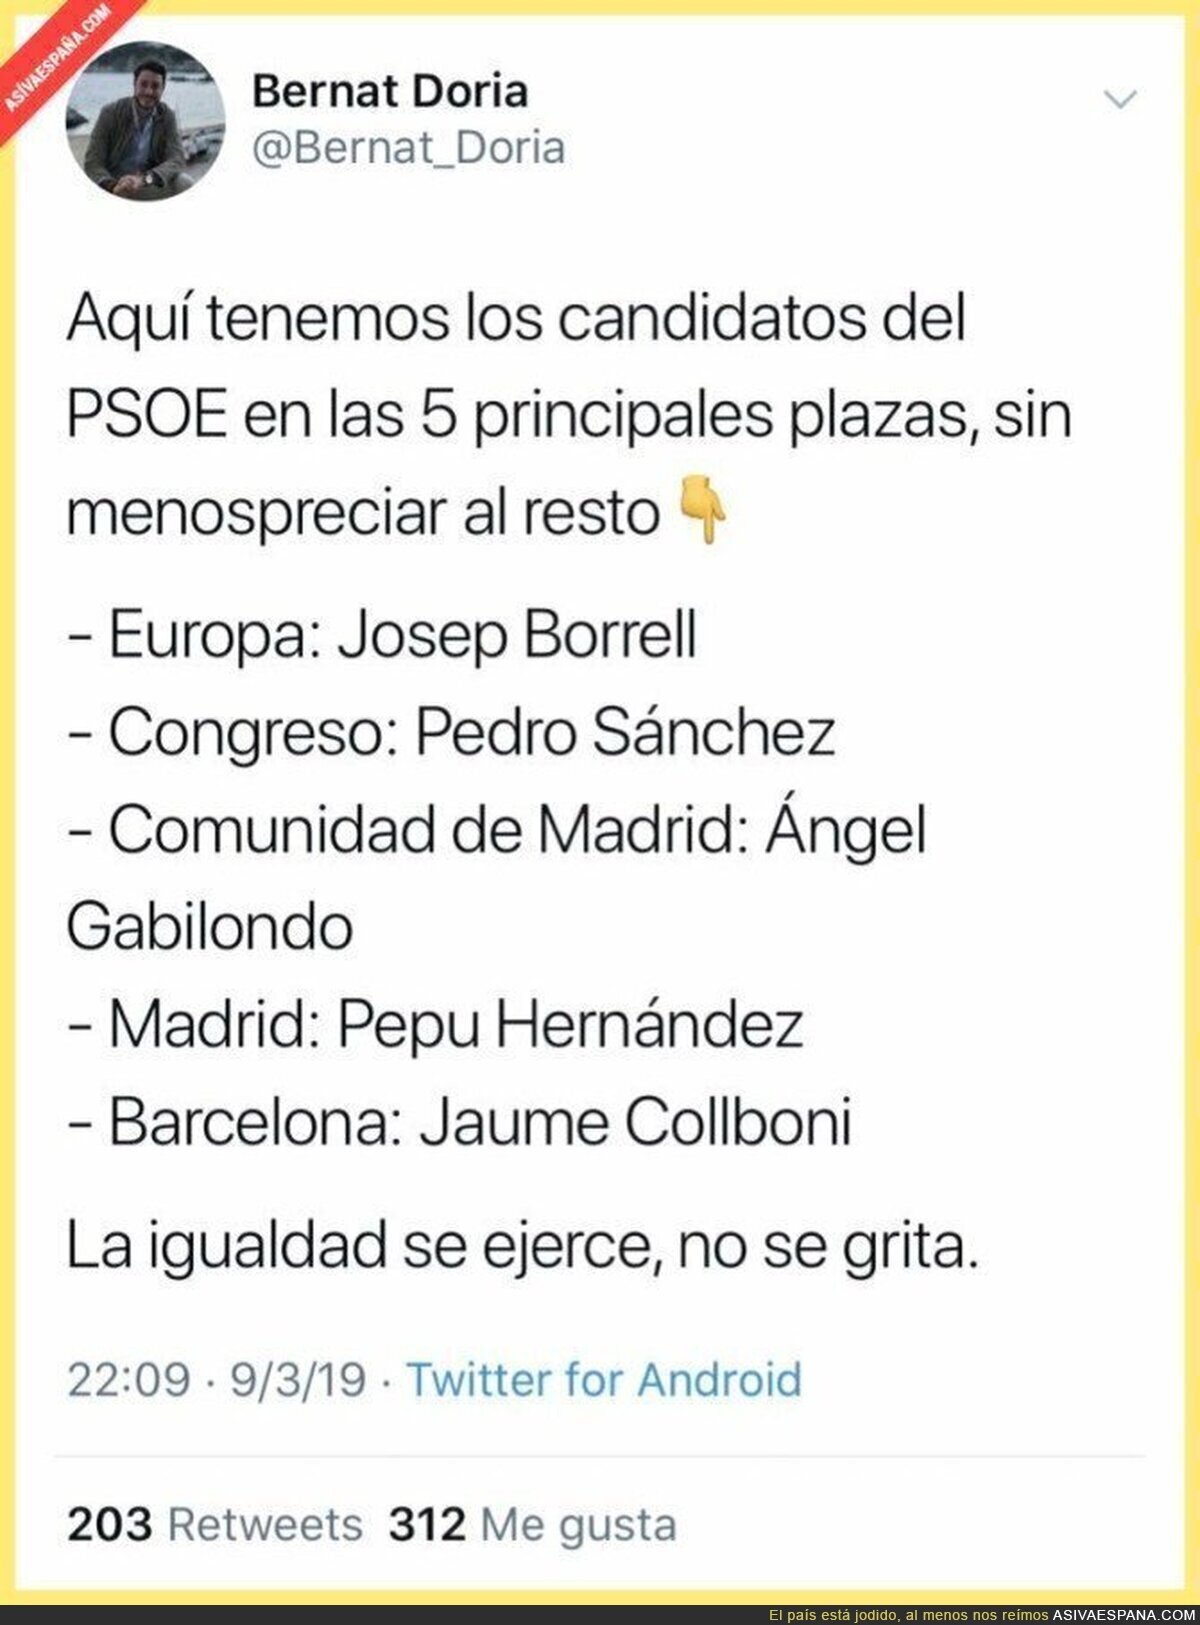 La igualdad del PSOE